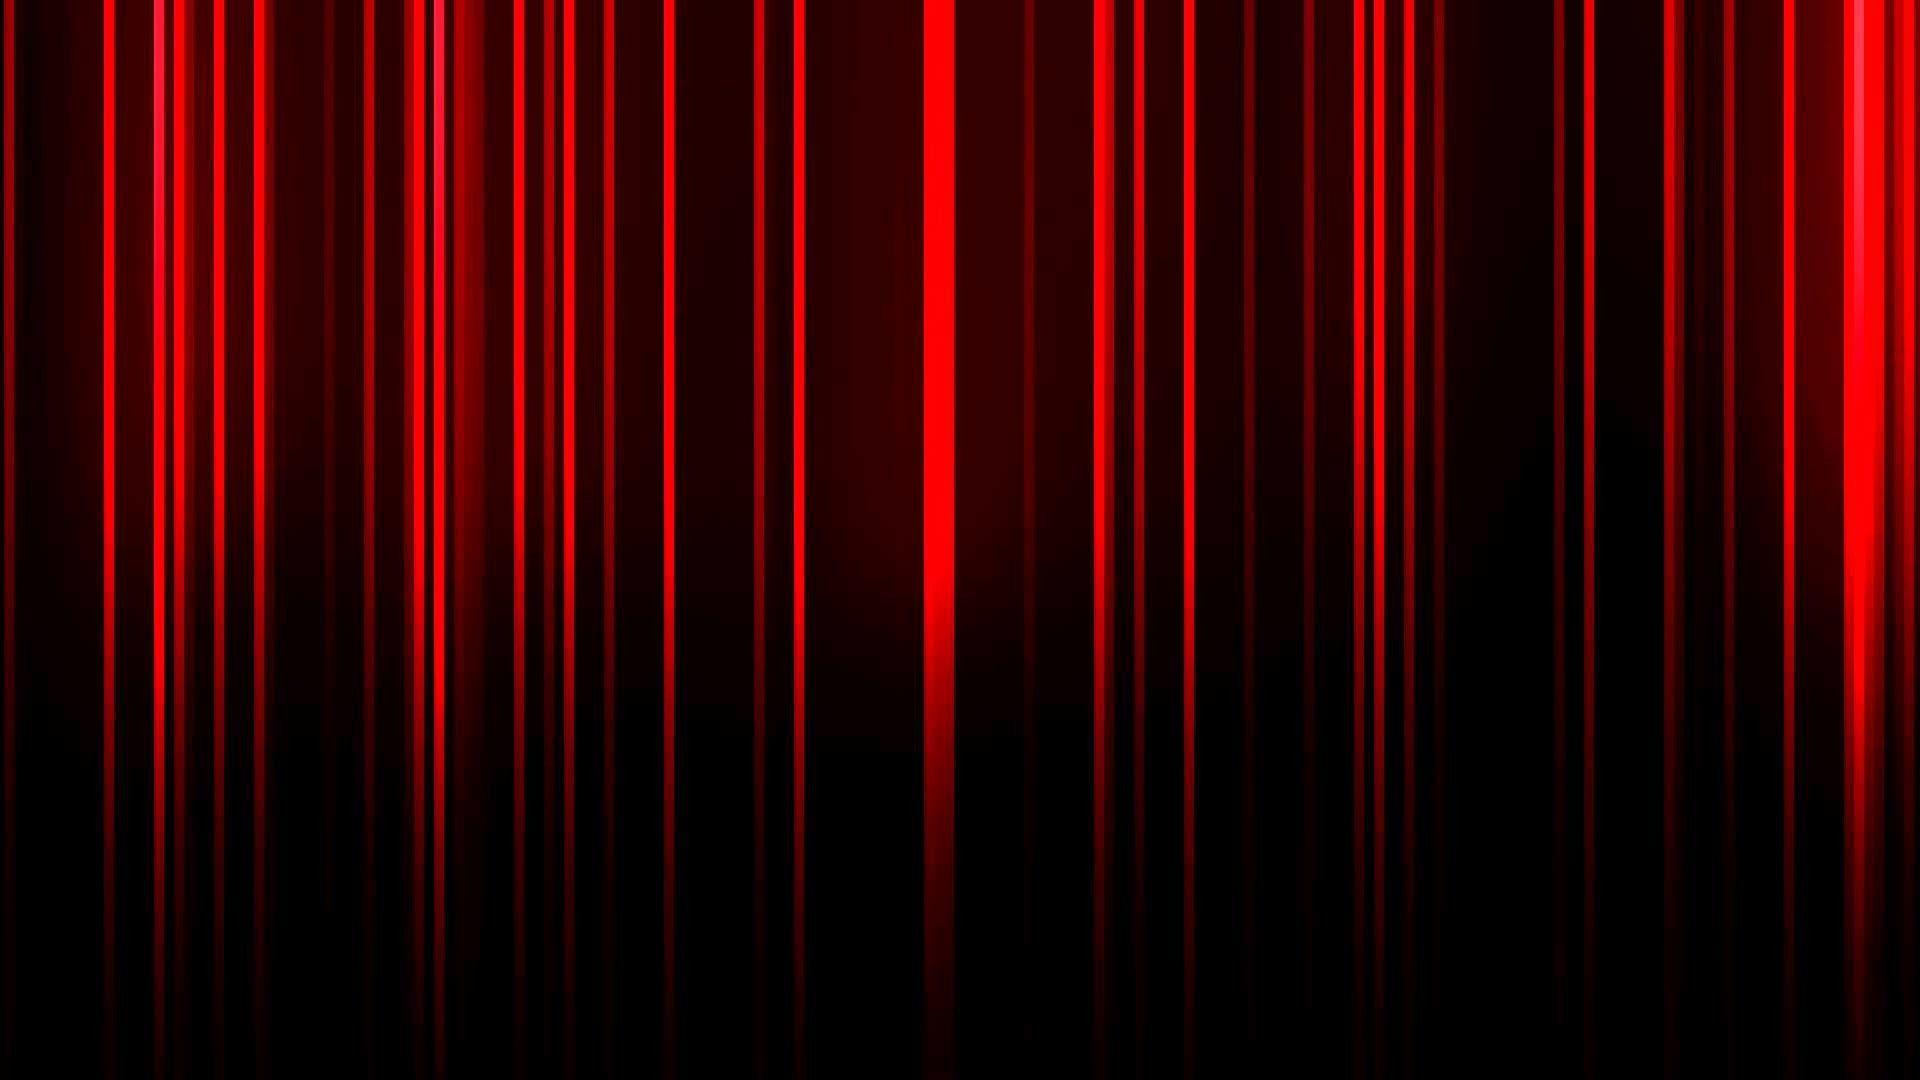 Yêu sự đơn giản mà tinh tế trong Neon Red Wallpapers? Với sự kết hợp tài tình giữa màu đỏ neon và nền đen bí ẩn, hình ảnh đem lại cảm giác sang trọng nhưng vô cùng độc đáo. Nhấn vào để trang trí màn hình theo phong cách riêng của bạn.